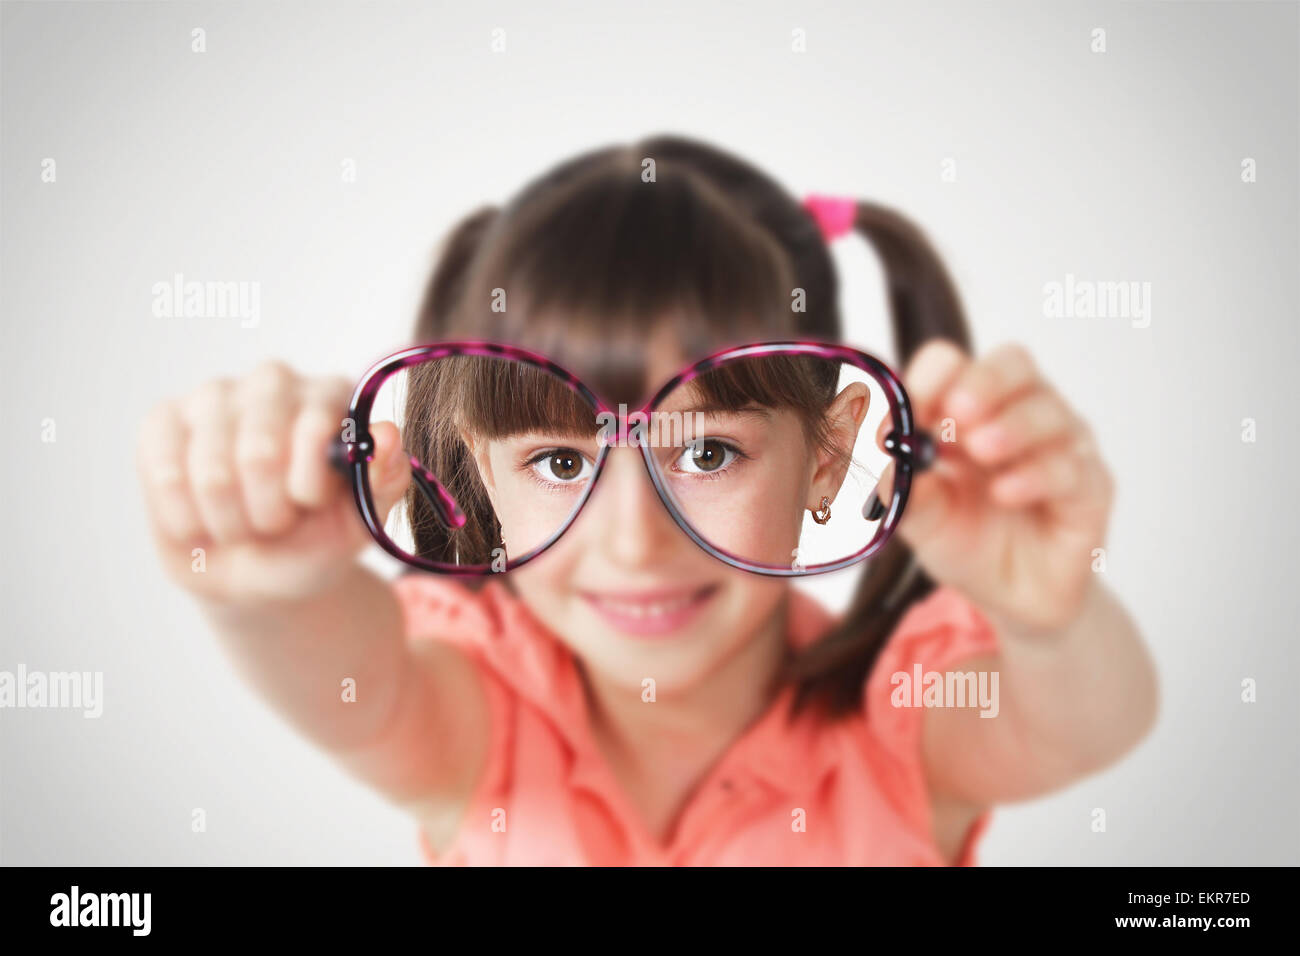 Little girl holding eyeglasses, concept de santé de la vue. Soft focus Banque D'Images